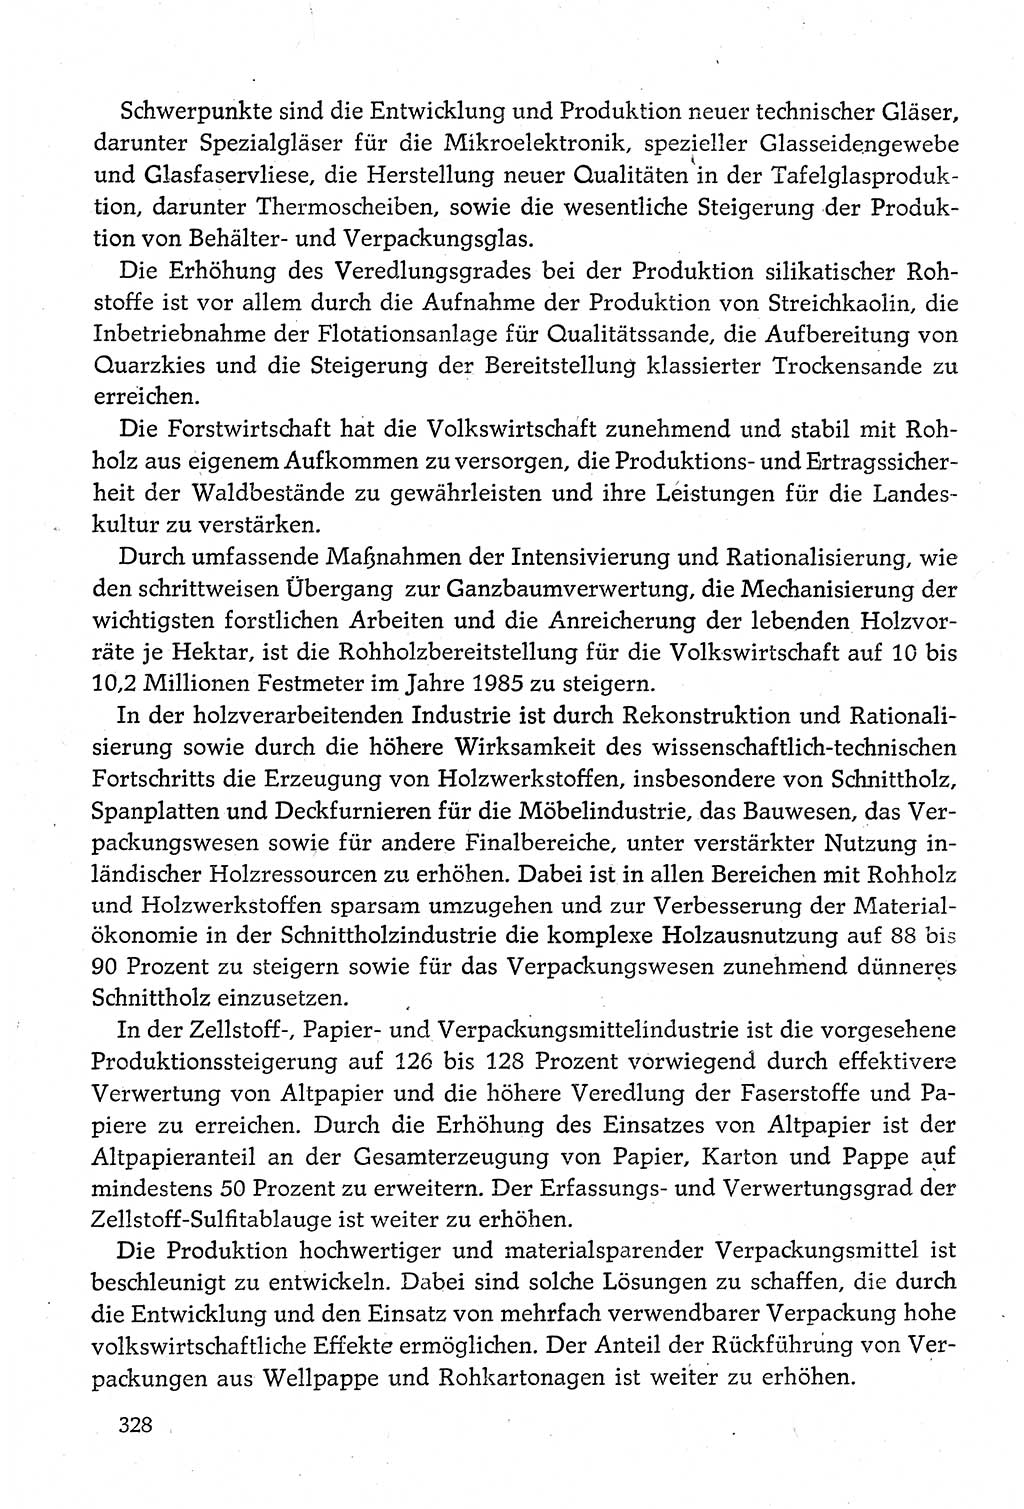 Dokumente der Sozialistischen Einheitspartei Deutschlands (SED) [Deutsche Demokratische Republik (DDR)] 1980-1981, Seite 328 (Dok. SED DDR 1980-1981, S. 328)